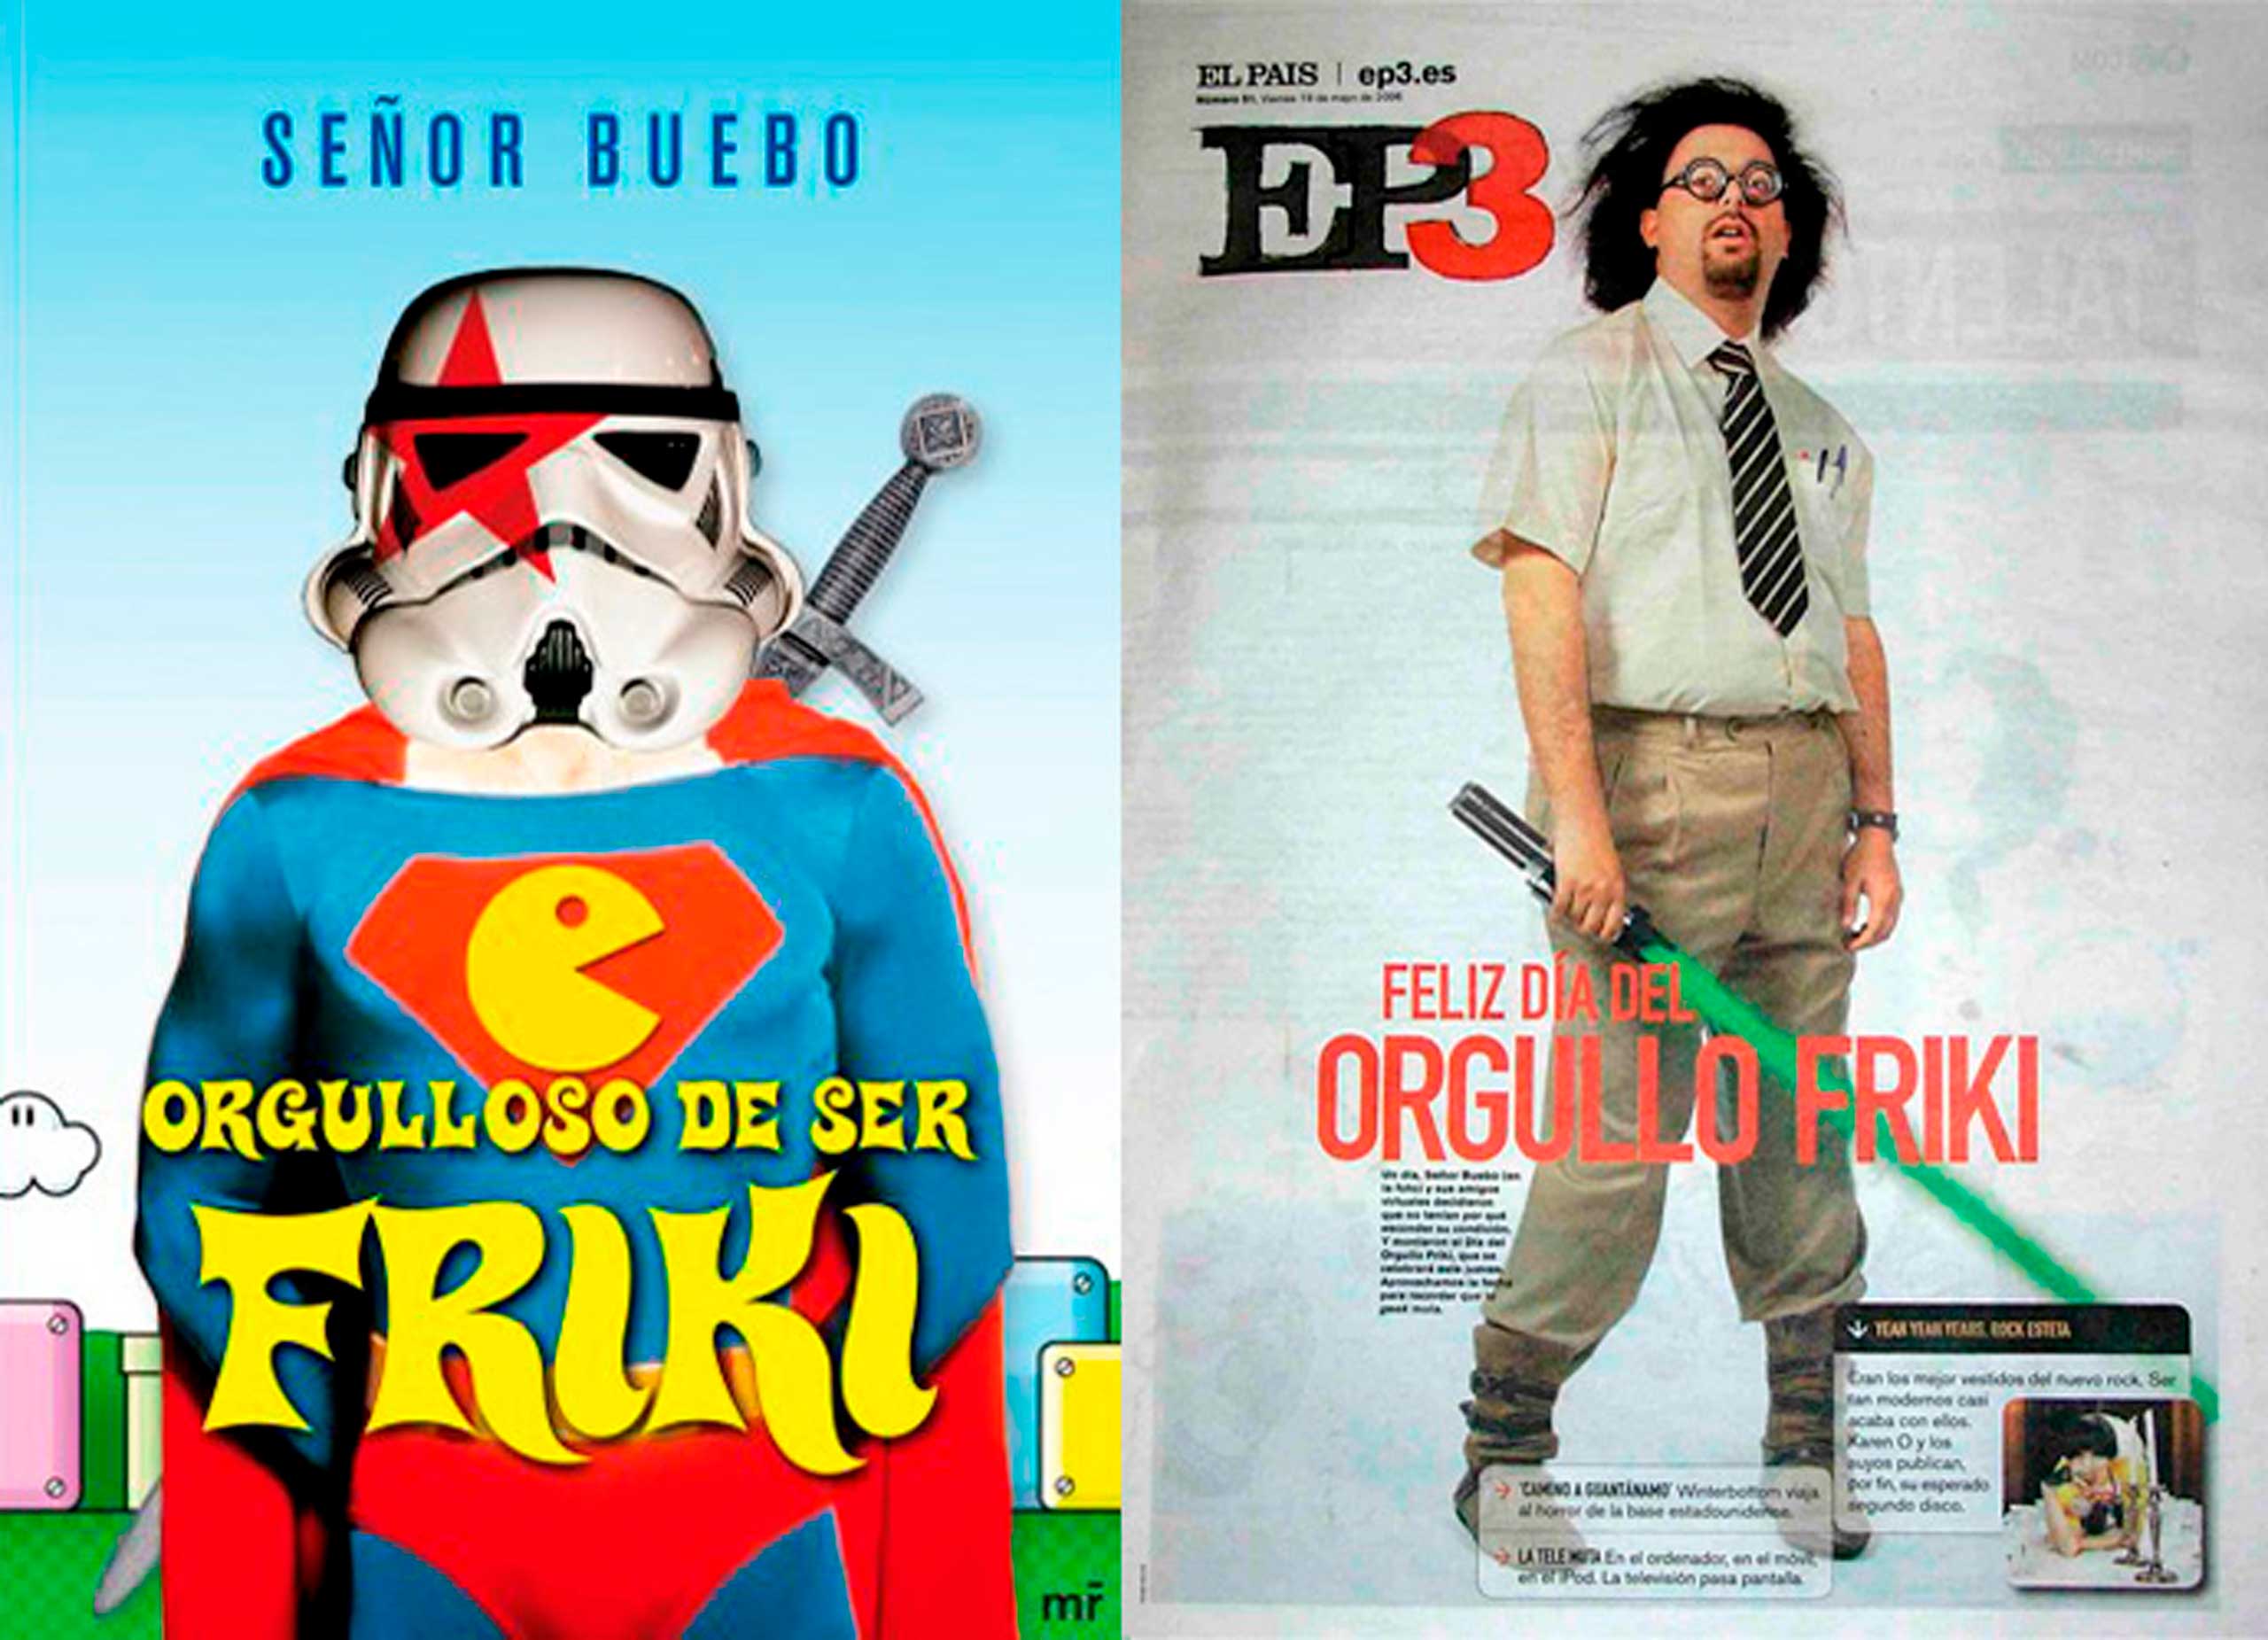 En España, fue el bloguero conocido como ‘Señor Buebo’ quien se encargó de organizar la primer Dia del Orgullo Friki 